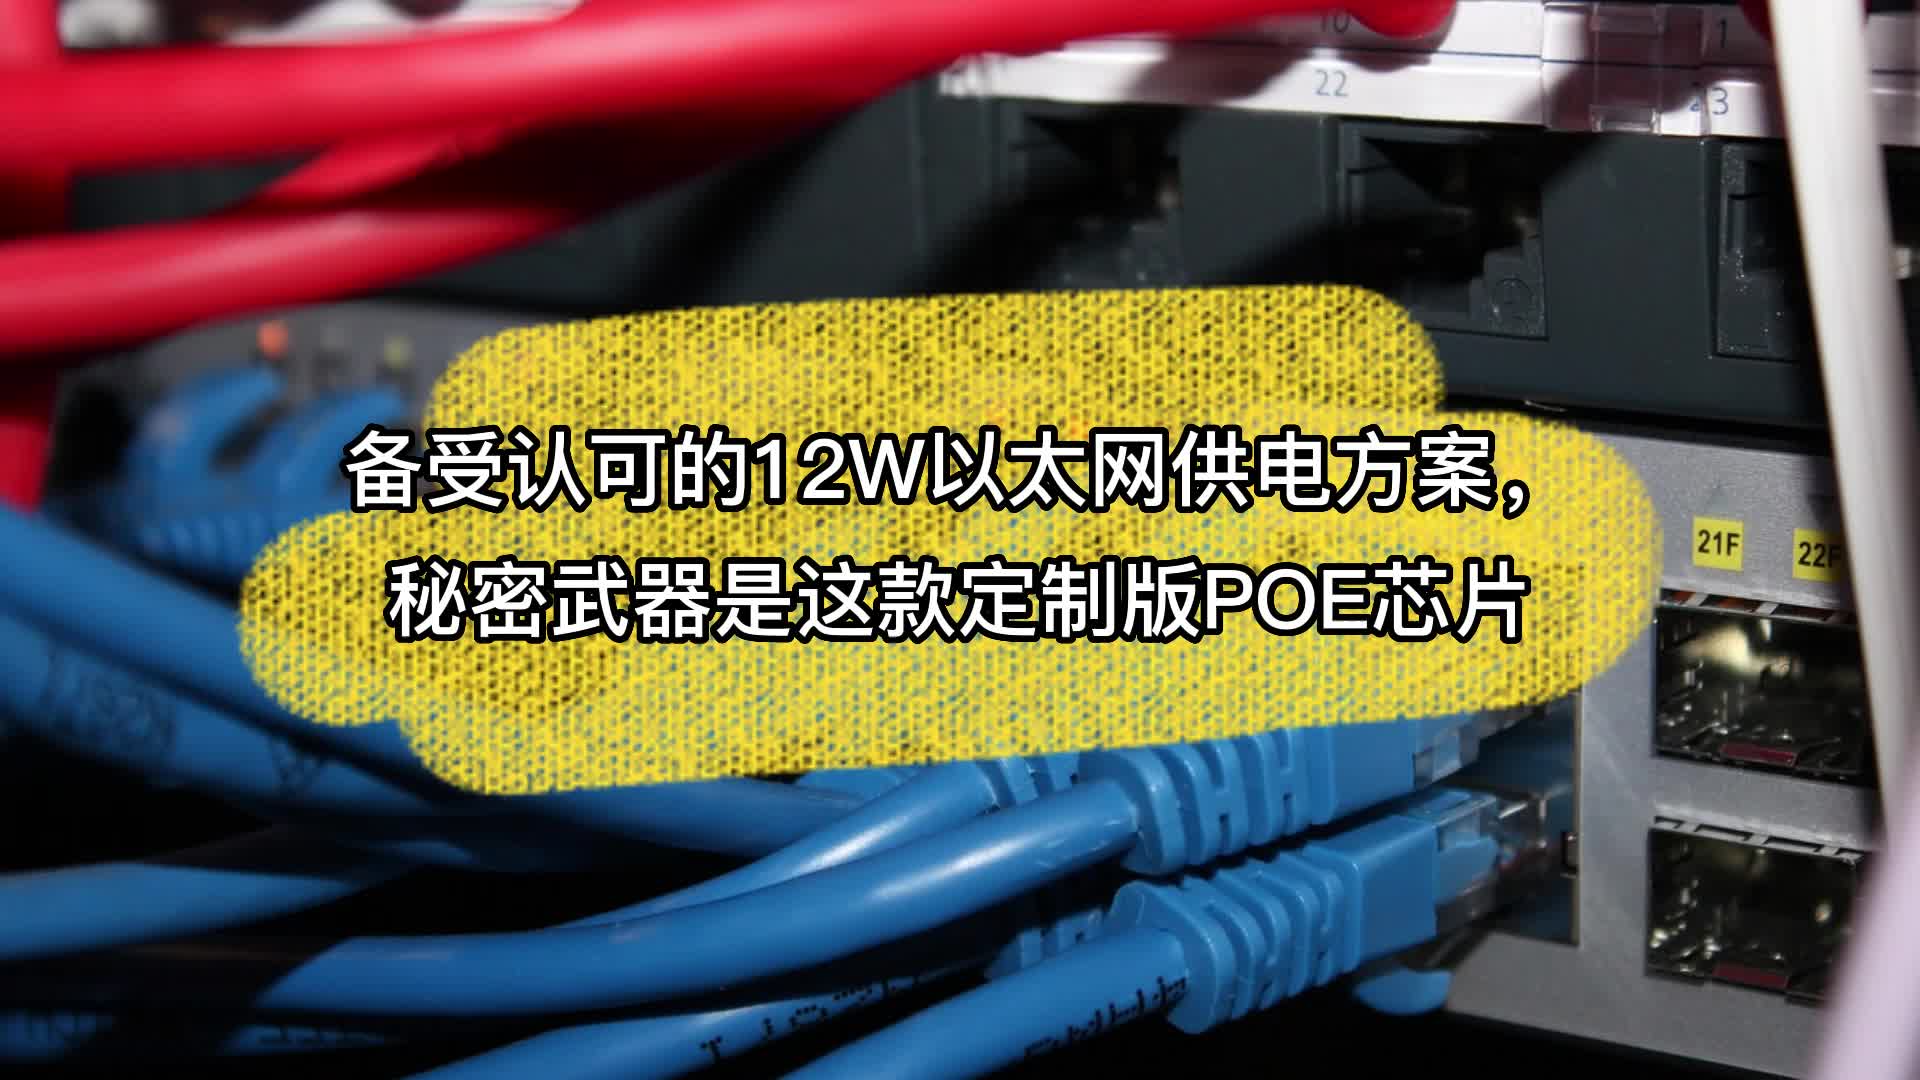 备受认可的12W以太网供电方案，秘密武器是这款定制版POE芯片 #思睿达 #以太网 #PoE# #芯片 